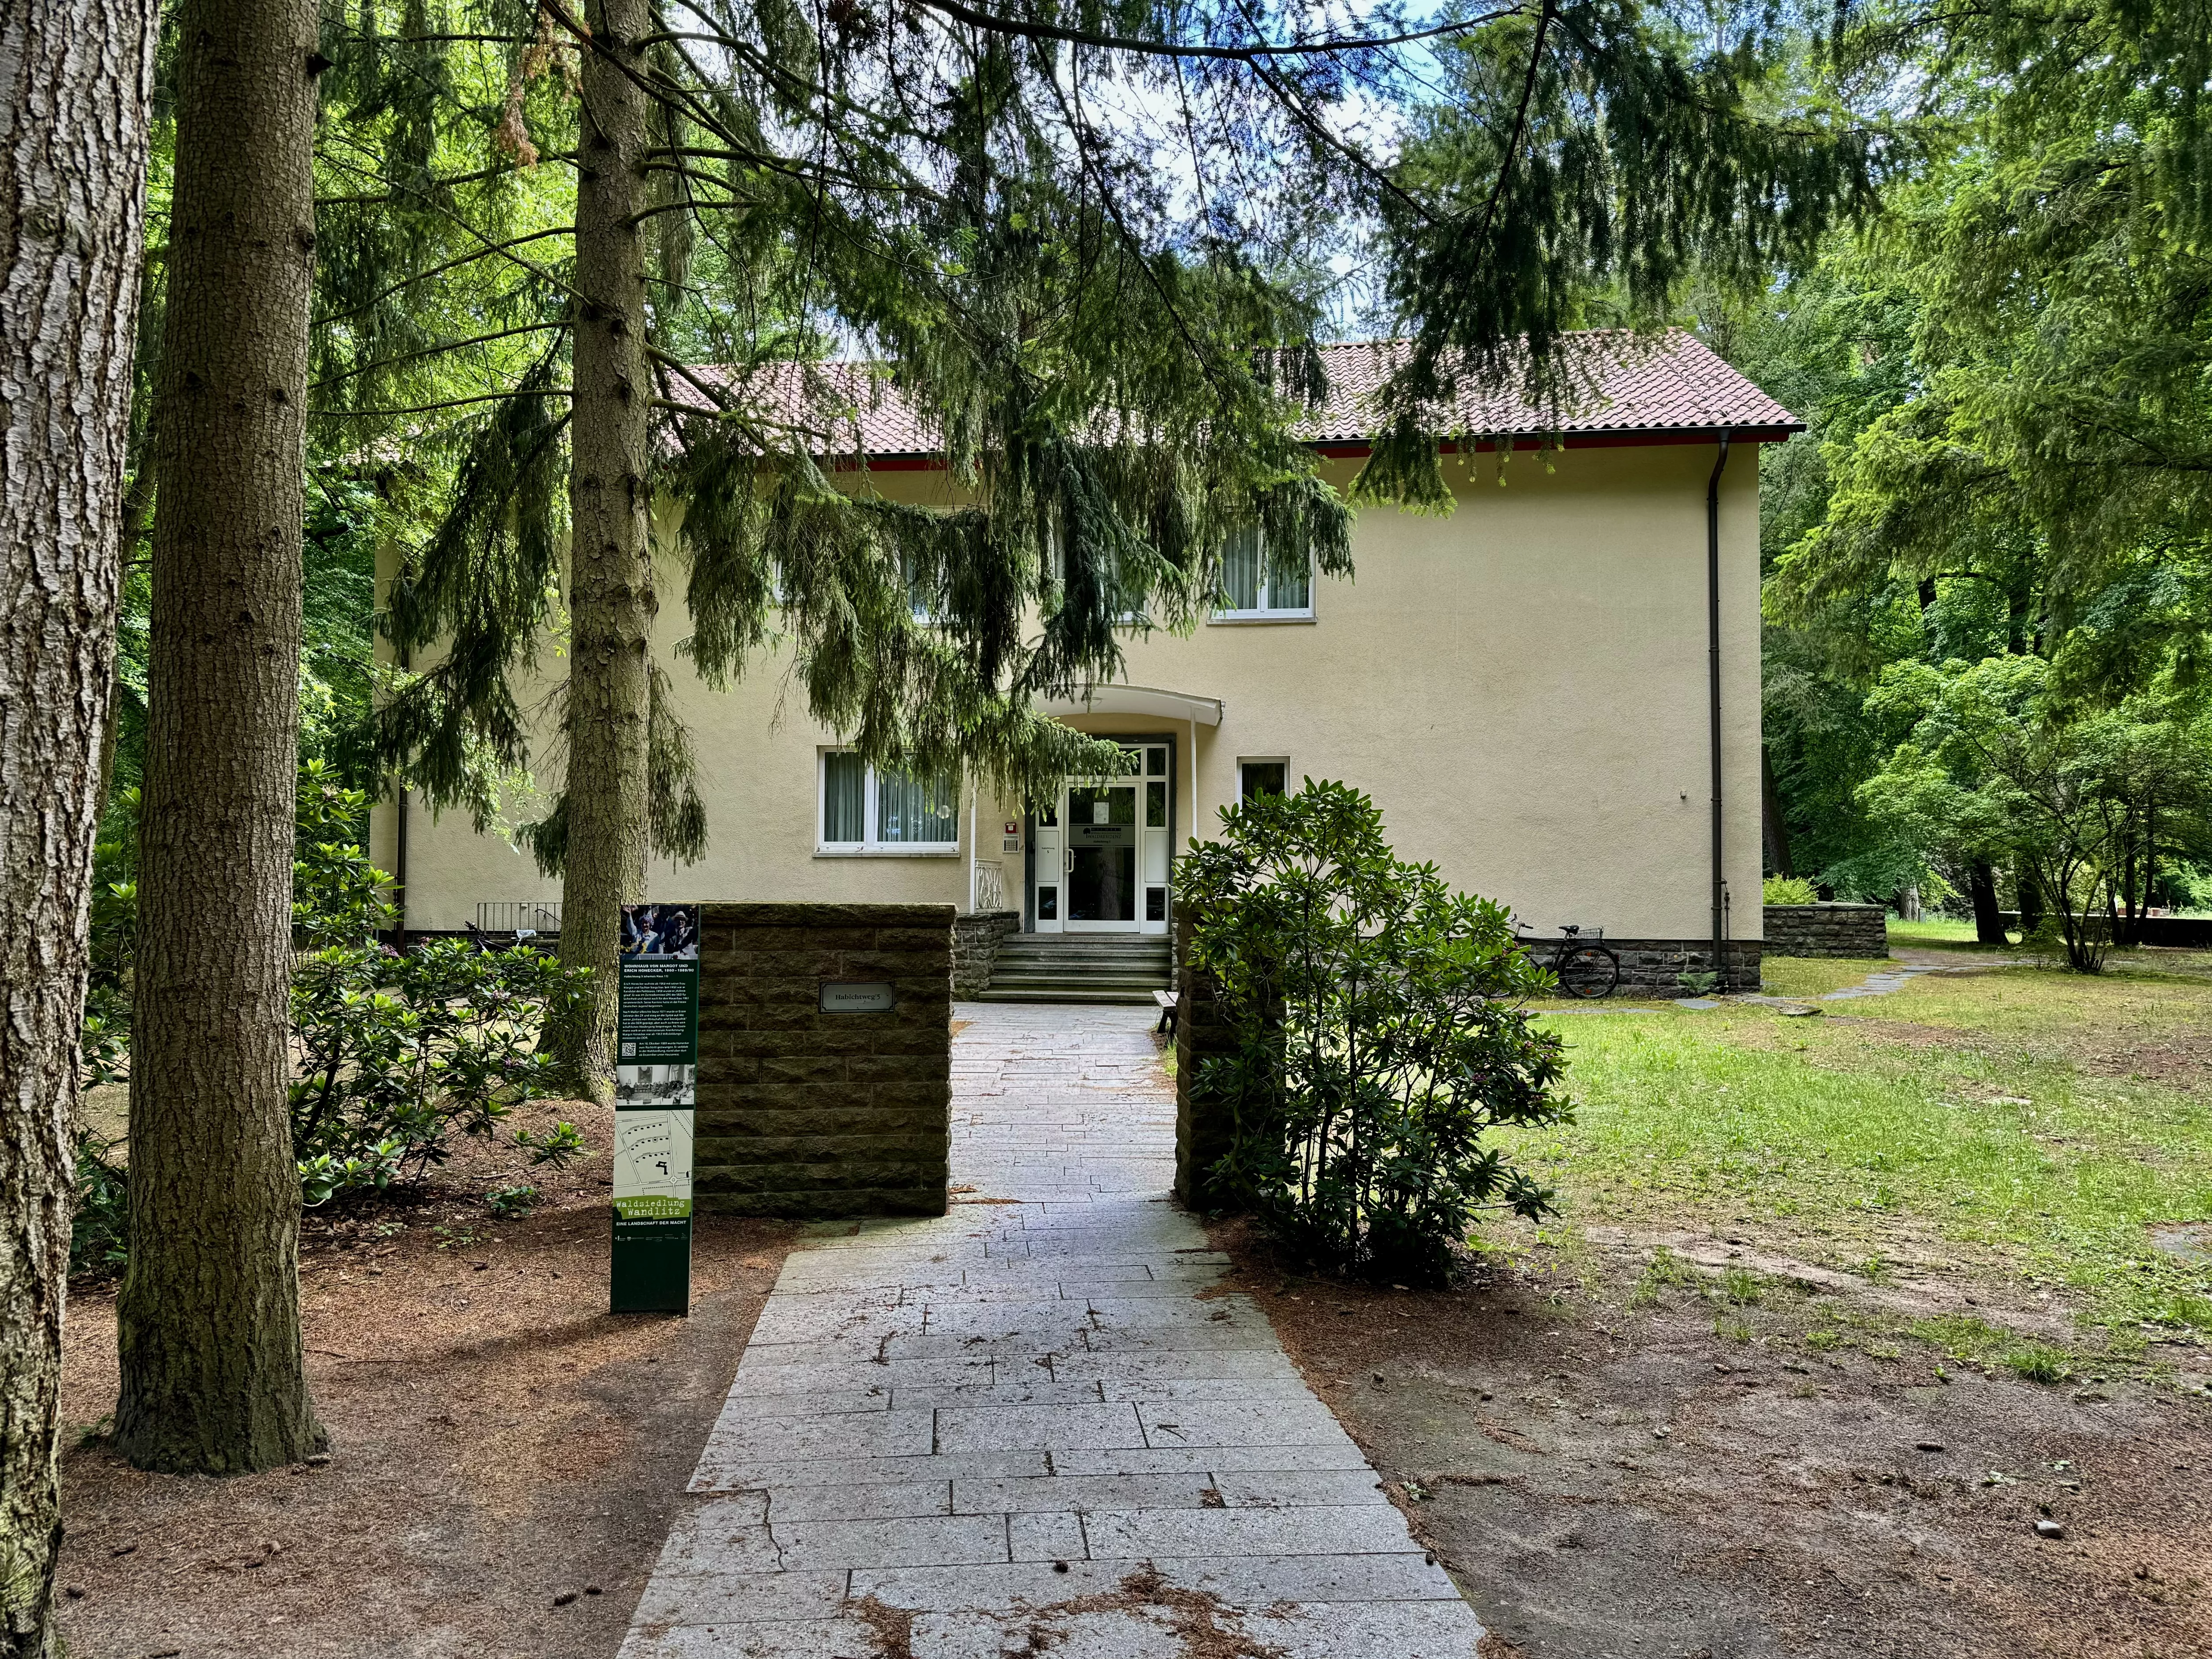 Waldsiedlung,Wandlitz, Bernau, Germany